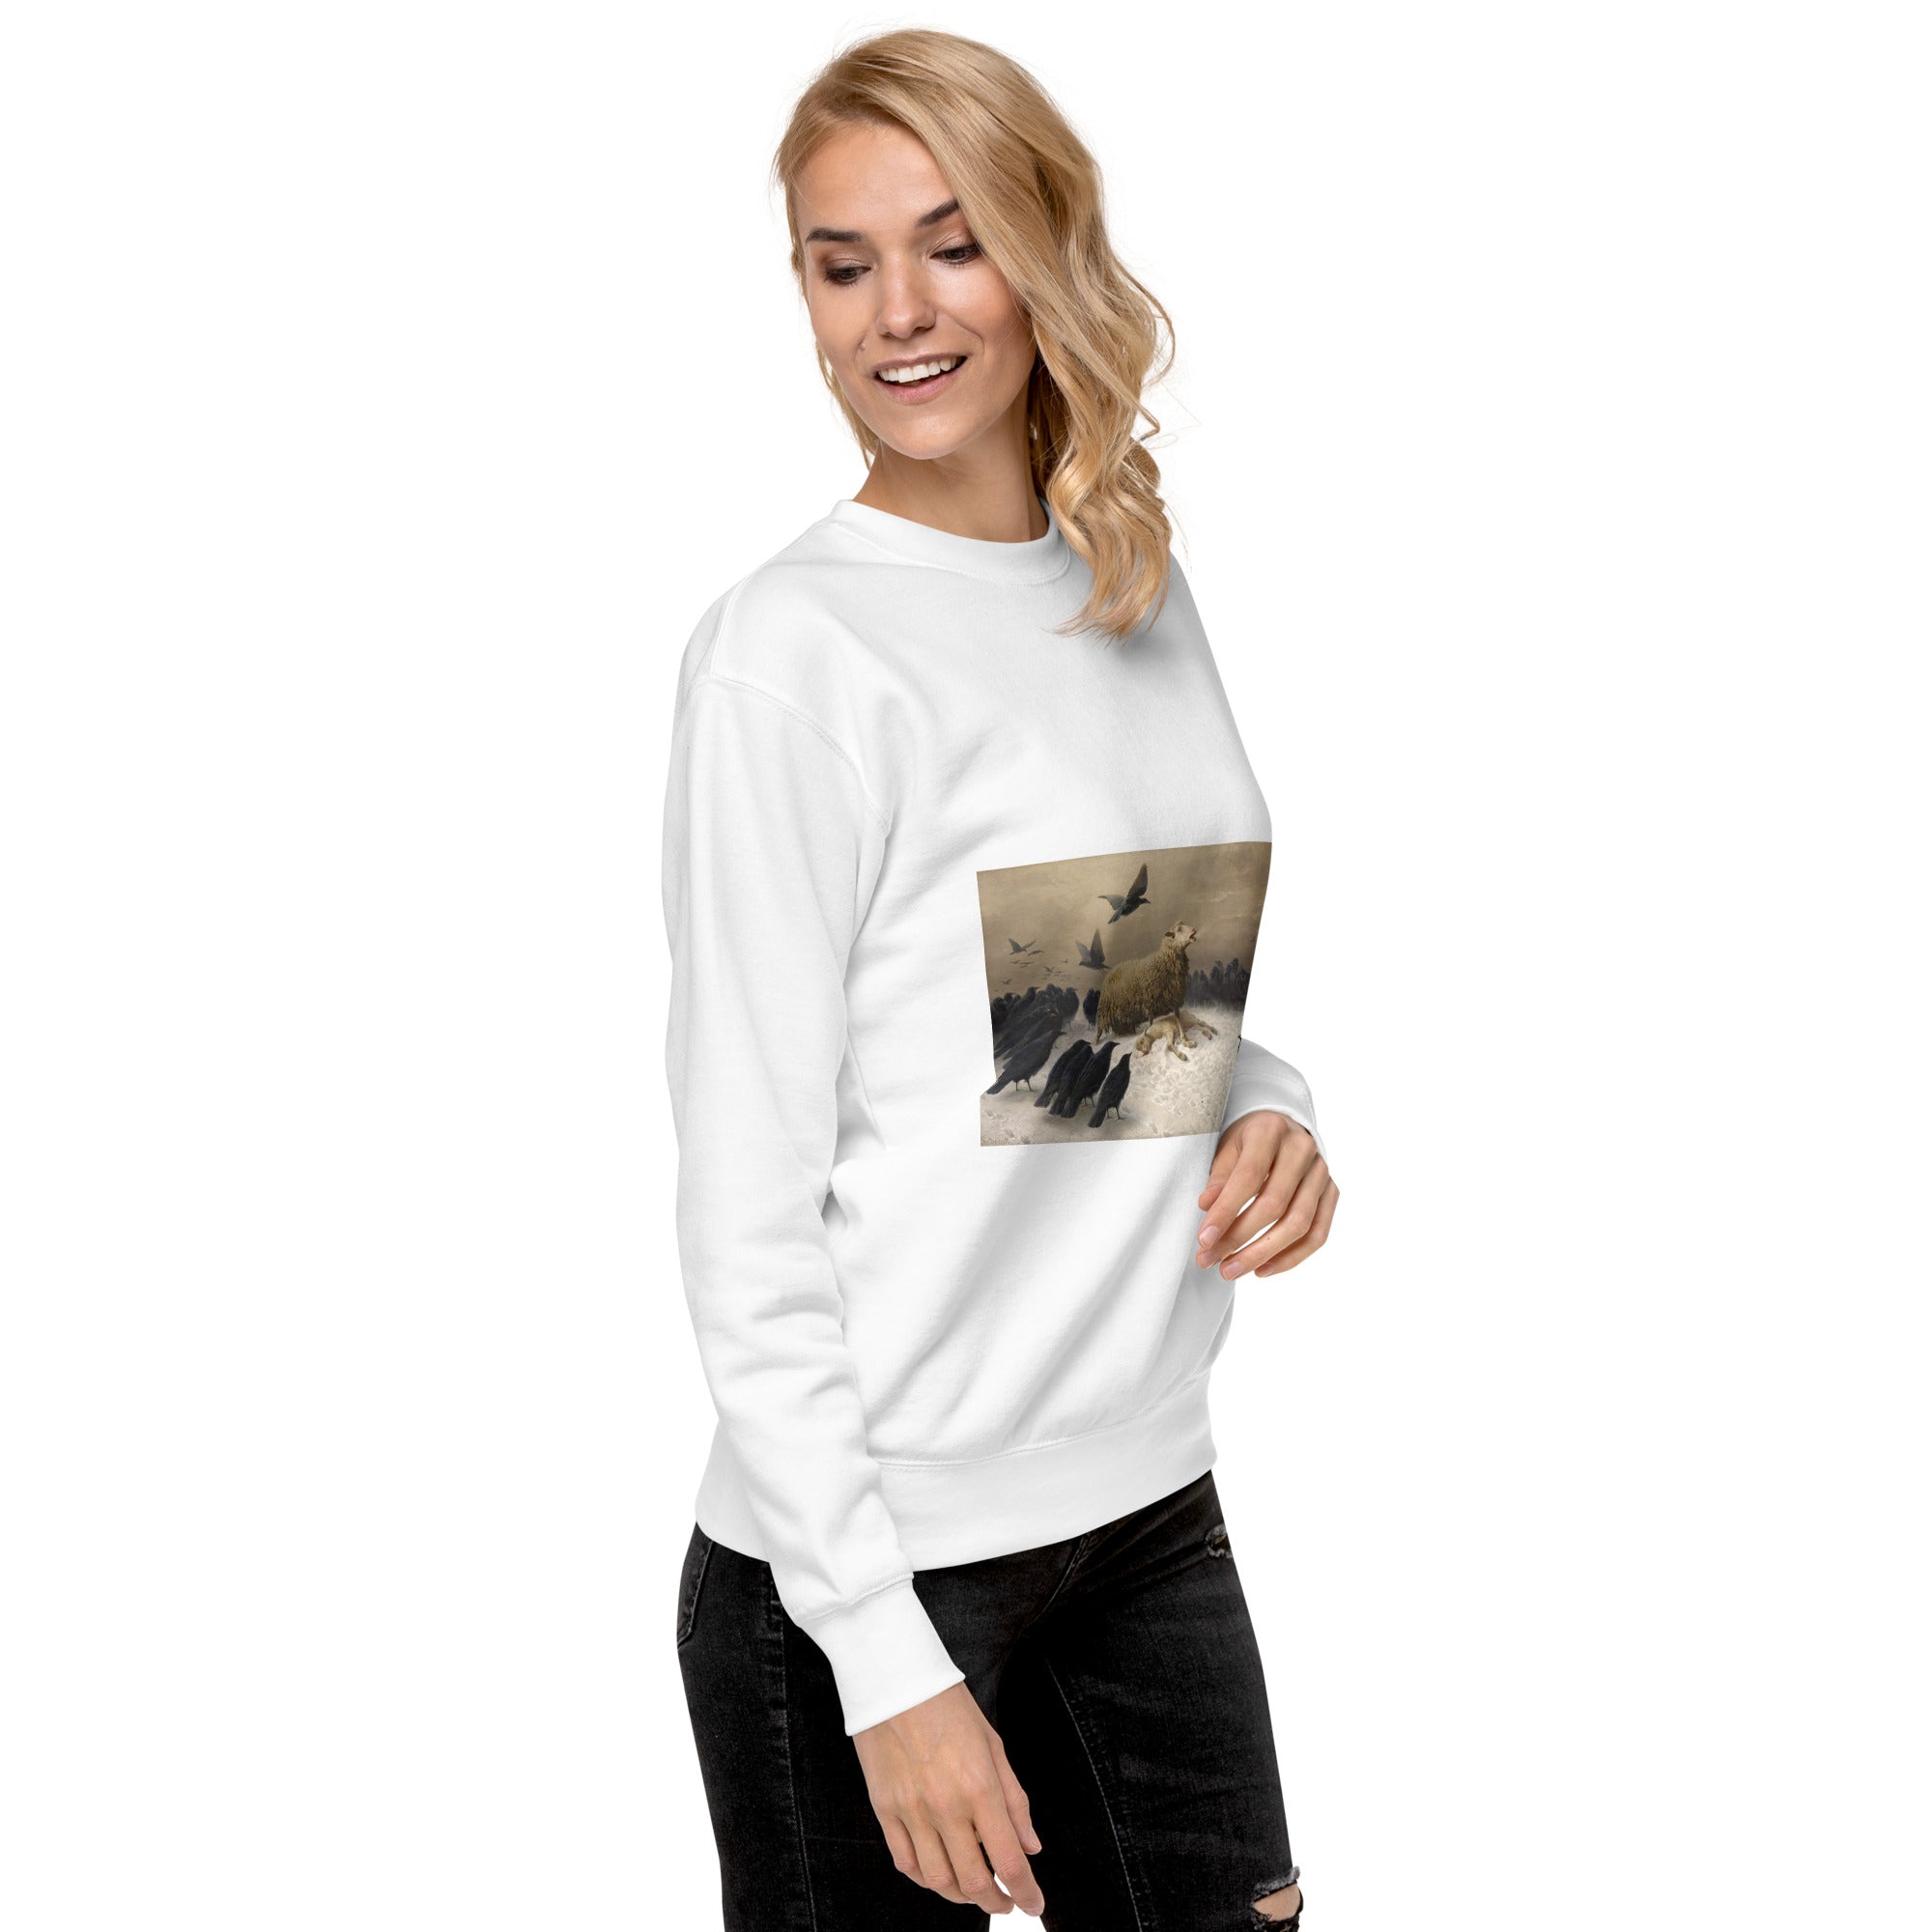 August Friedrich Schenck 'Angst' Berühmtes Gemälde Sweatshirt | Unisex Premium Sweatshirt